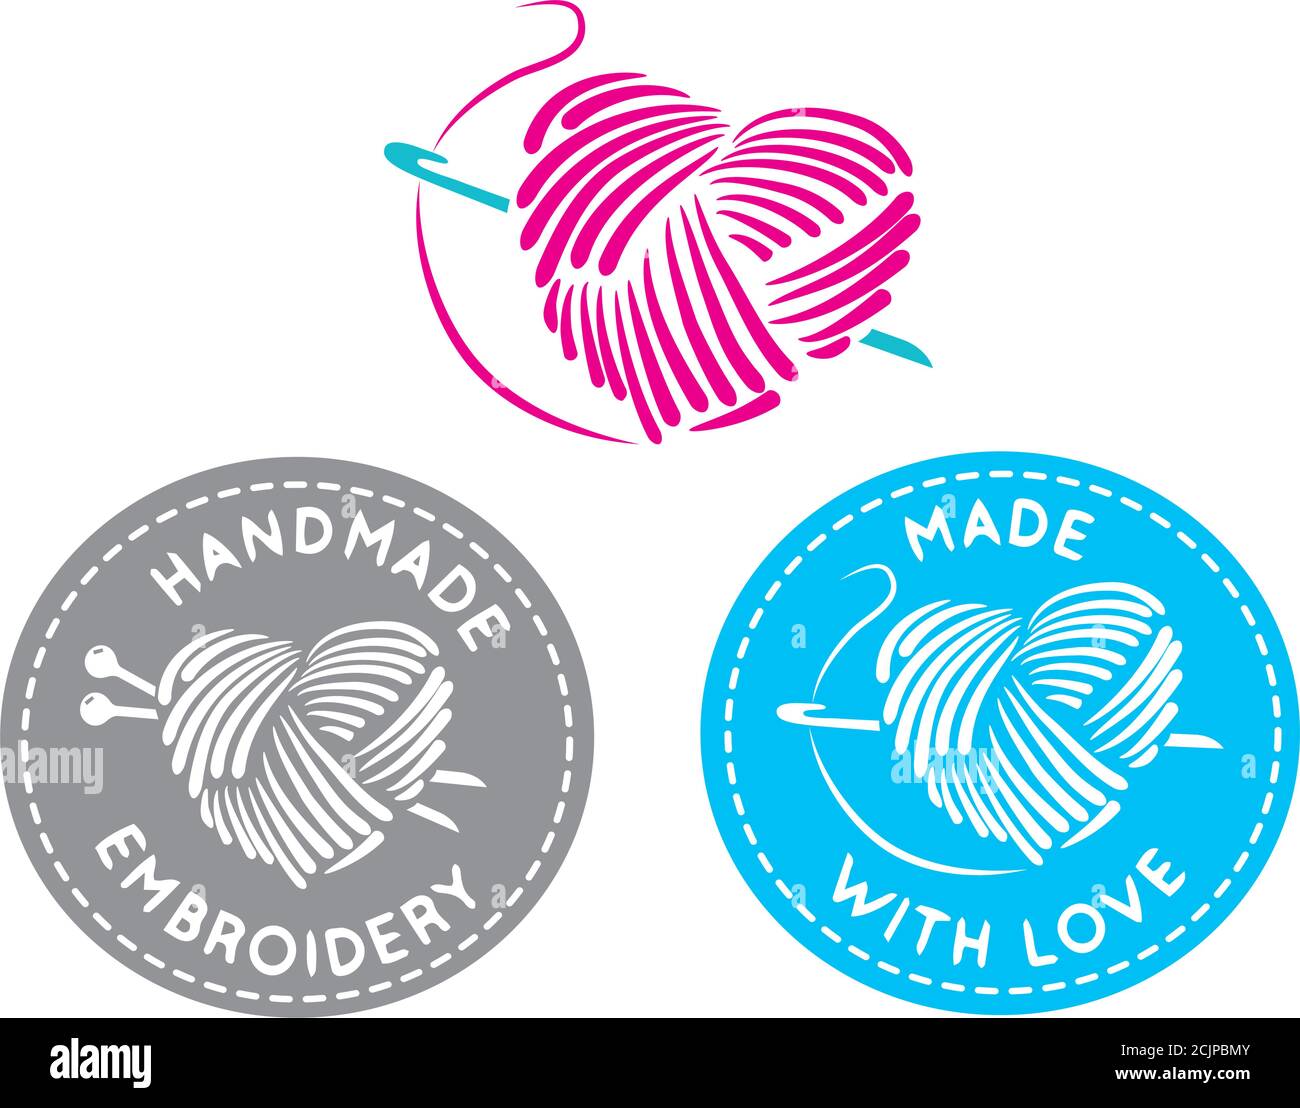 Ensemble vectoriel de modèles de logo en fait et tricoté avec amour, style linéaire simple - badges de mode et d'artisanat fait à la main - emblèmes embroid fait à la main Illustration de Vecteur